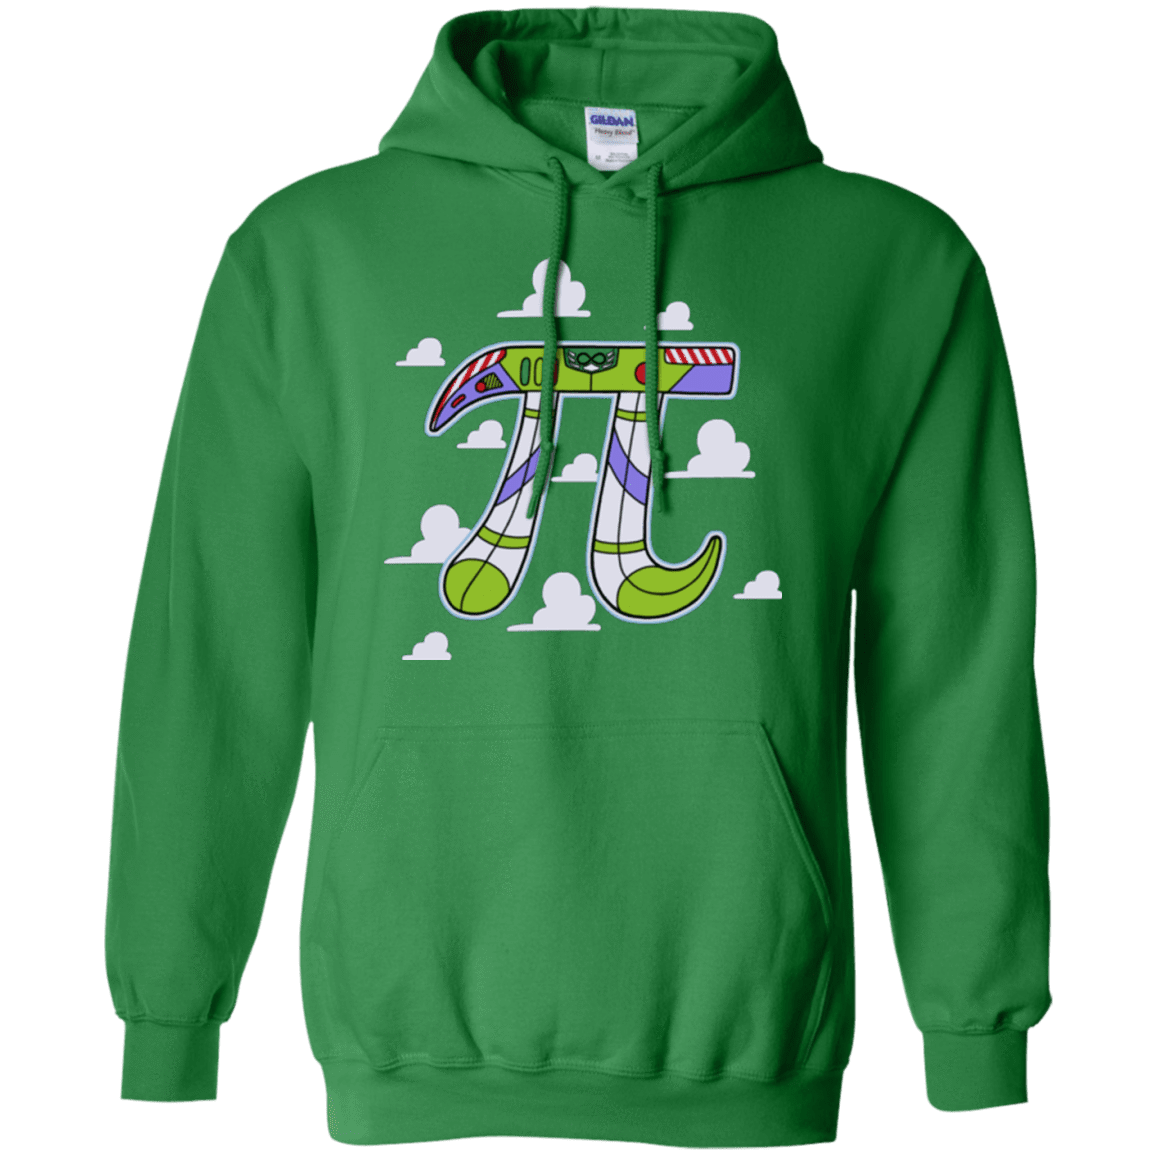 Sweatshirts Irish Green / Small To Infinity Pullover Hoodie